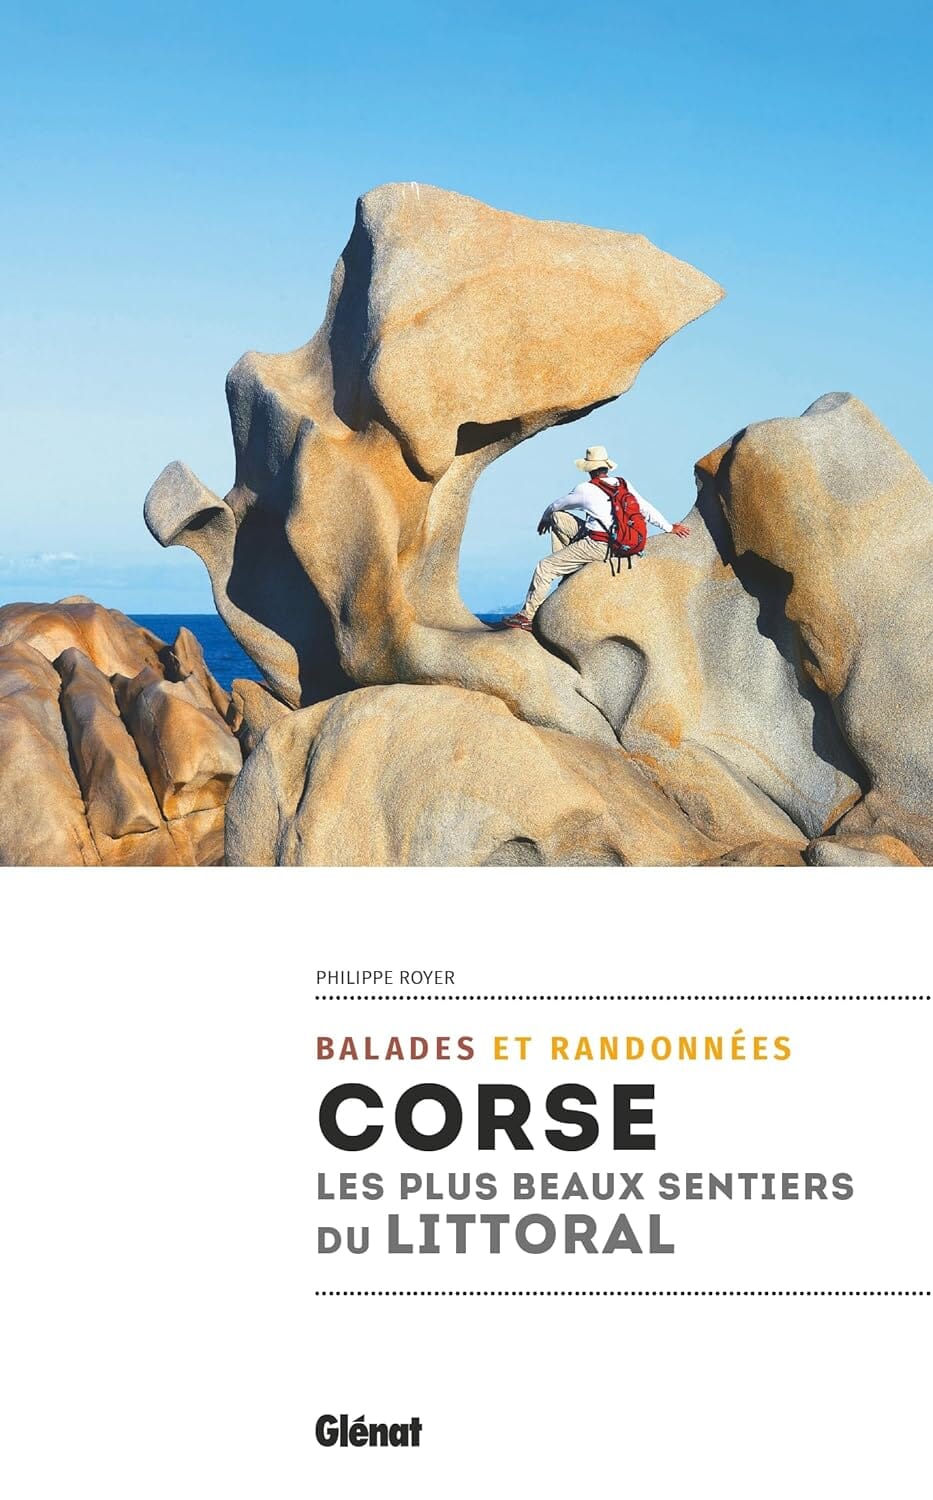 Guide de randonnées - Corse, les plus beaux sentiers du littoral | Glénat guide de randonnée Glénat 